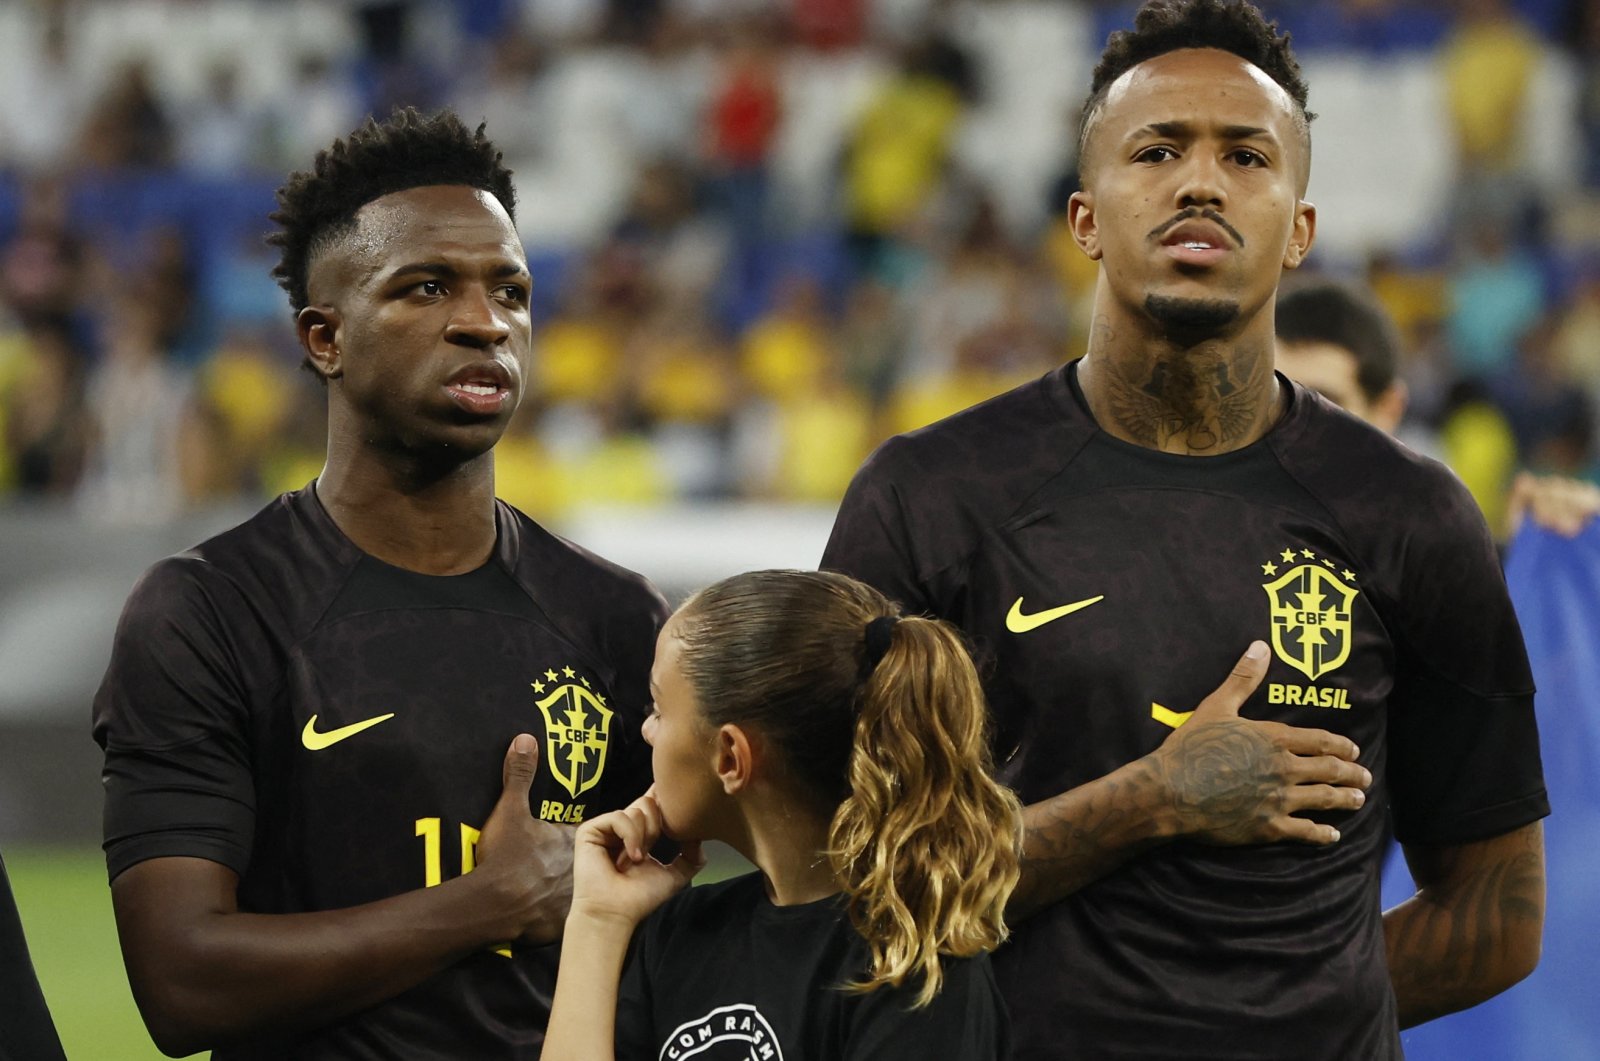 Brasil mendukung Vinicius dengan mengenakan seragam hitam dalam pertandingan persahabatan anti-rasisme